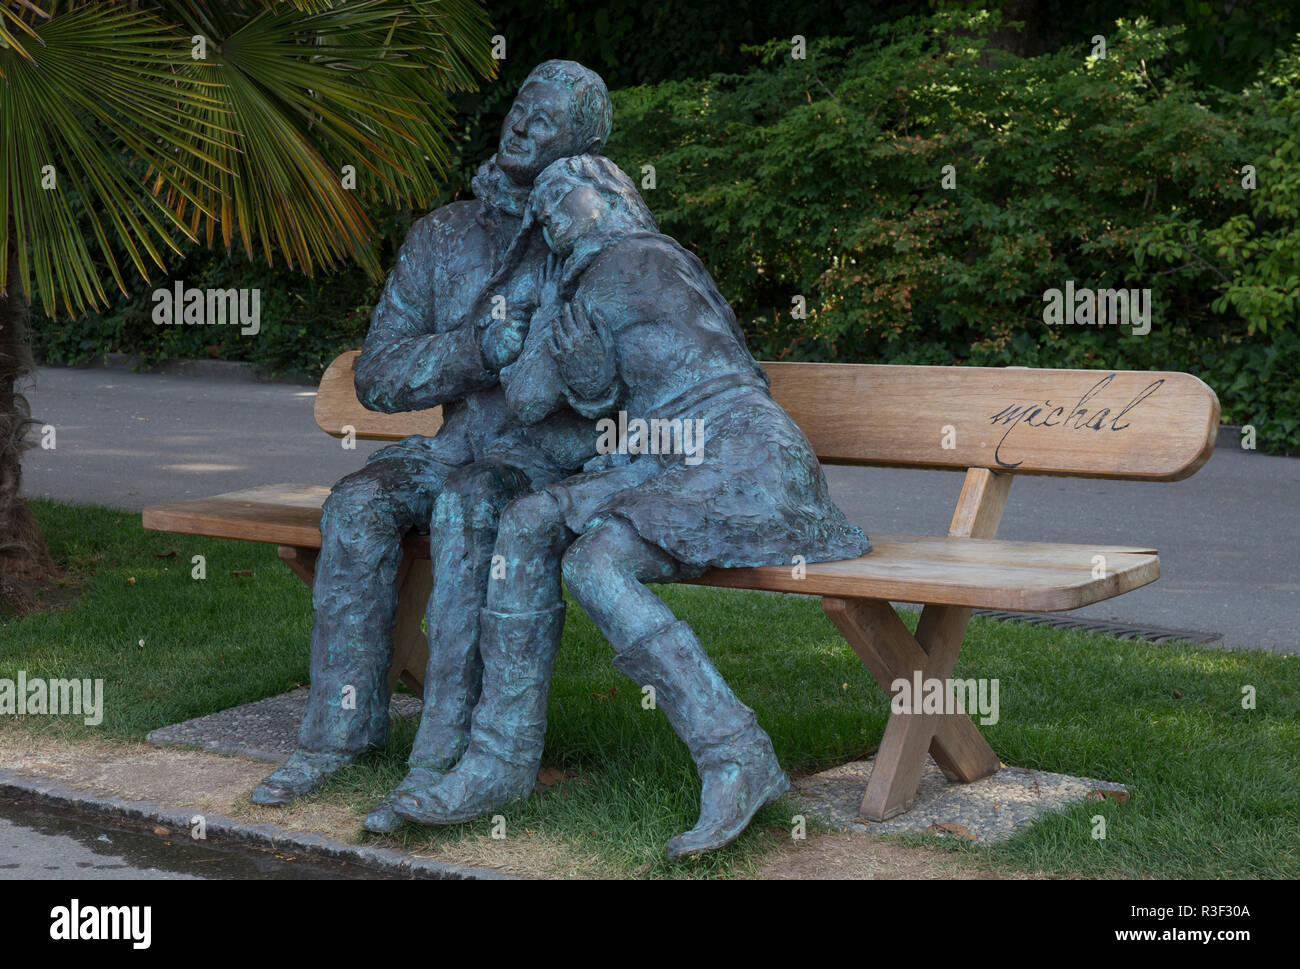 Les Amoureux sculpture by Michal. Lake Geneva, Montreux, Canton Vaud, Switzerland. Stock Photo